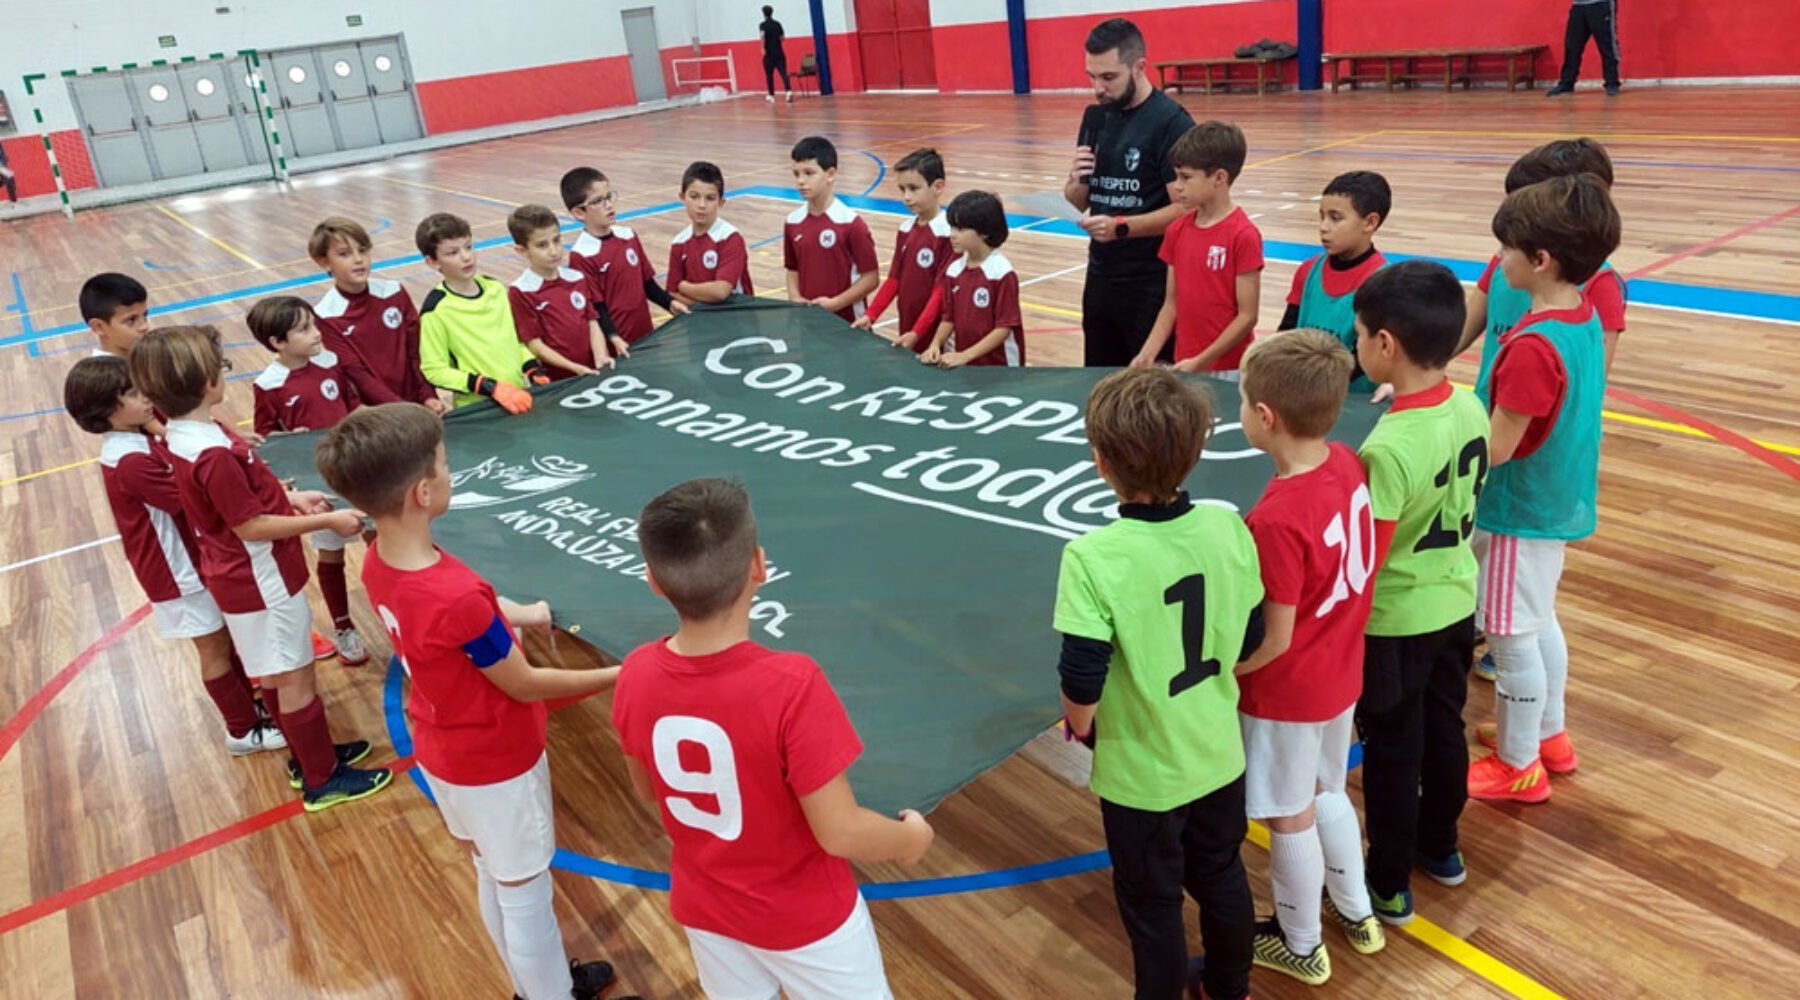 El C.D Albolote Futsal llega a un acuerdo de filialidad con C.D Regina Mundi y C.D Compañía de María